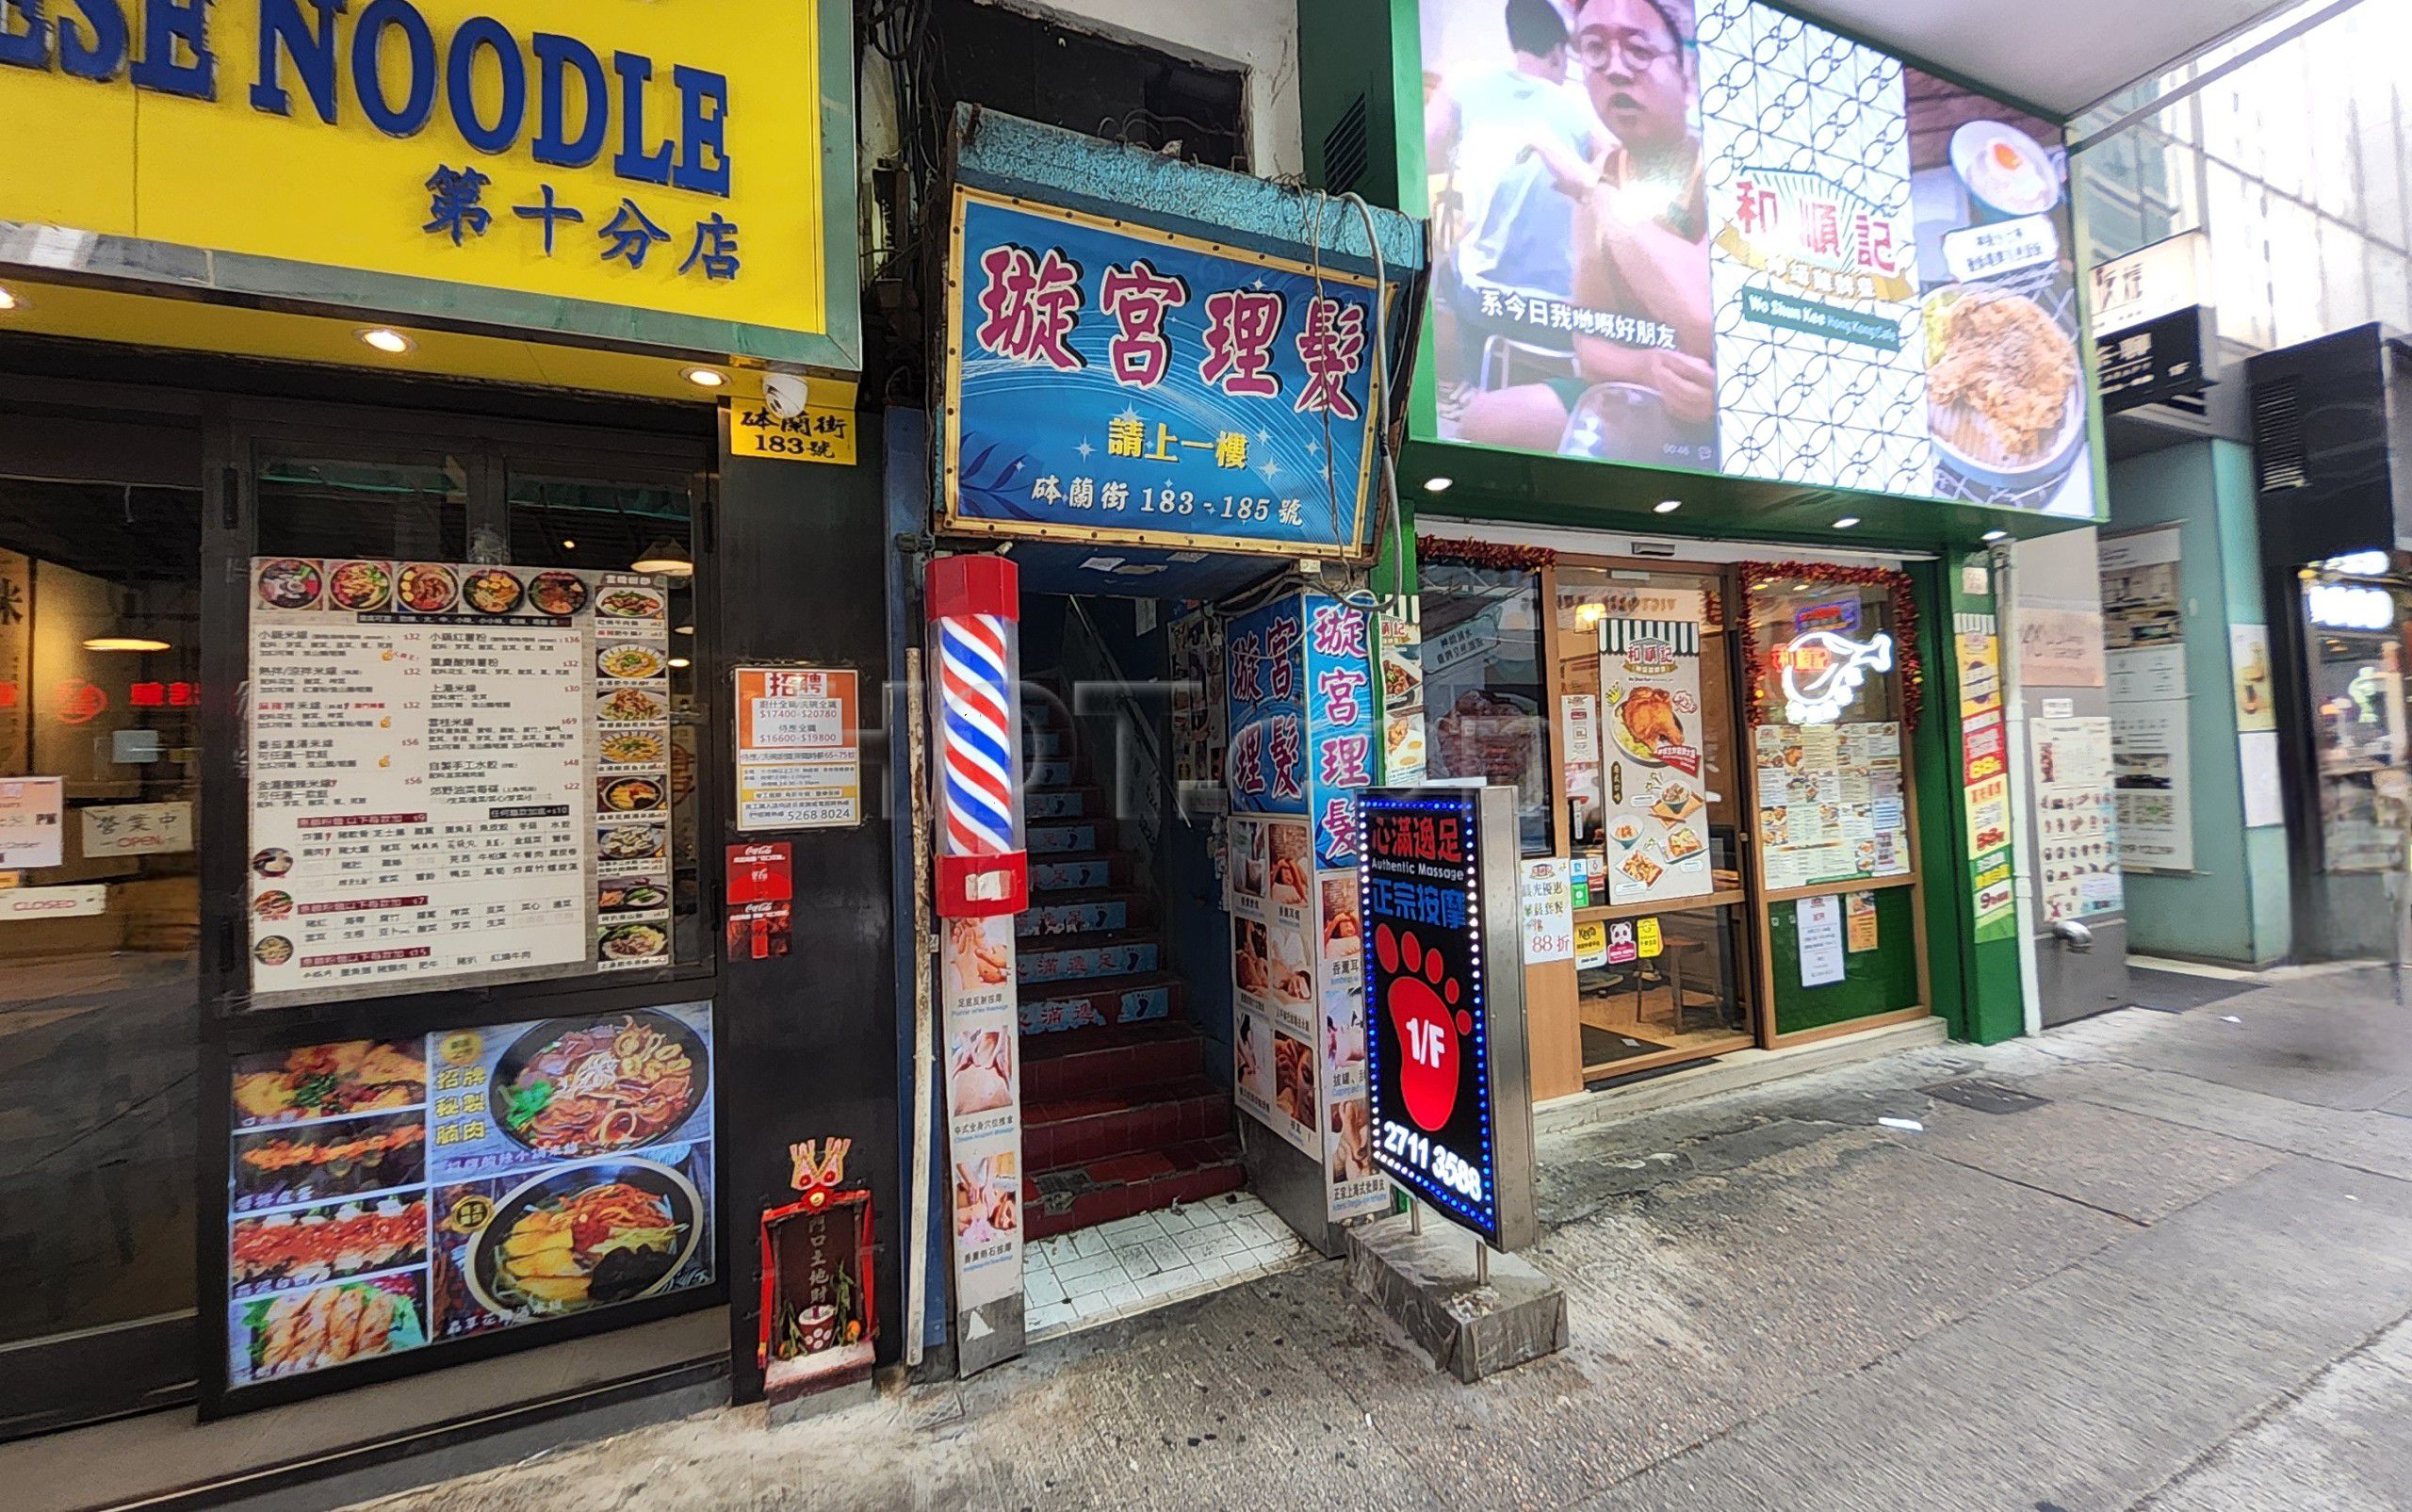 Hong Kong, Hong Kong Massage